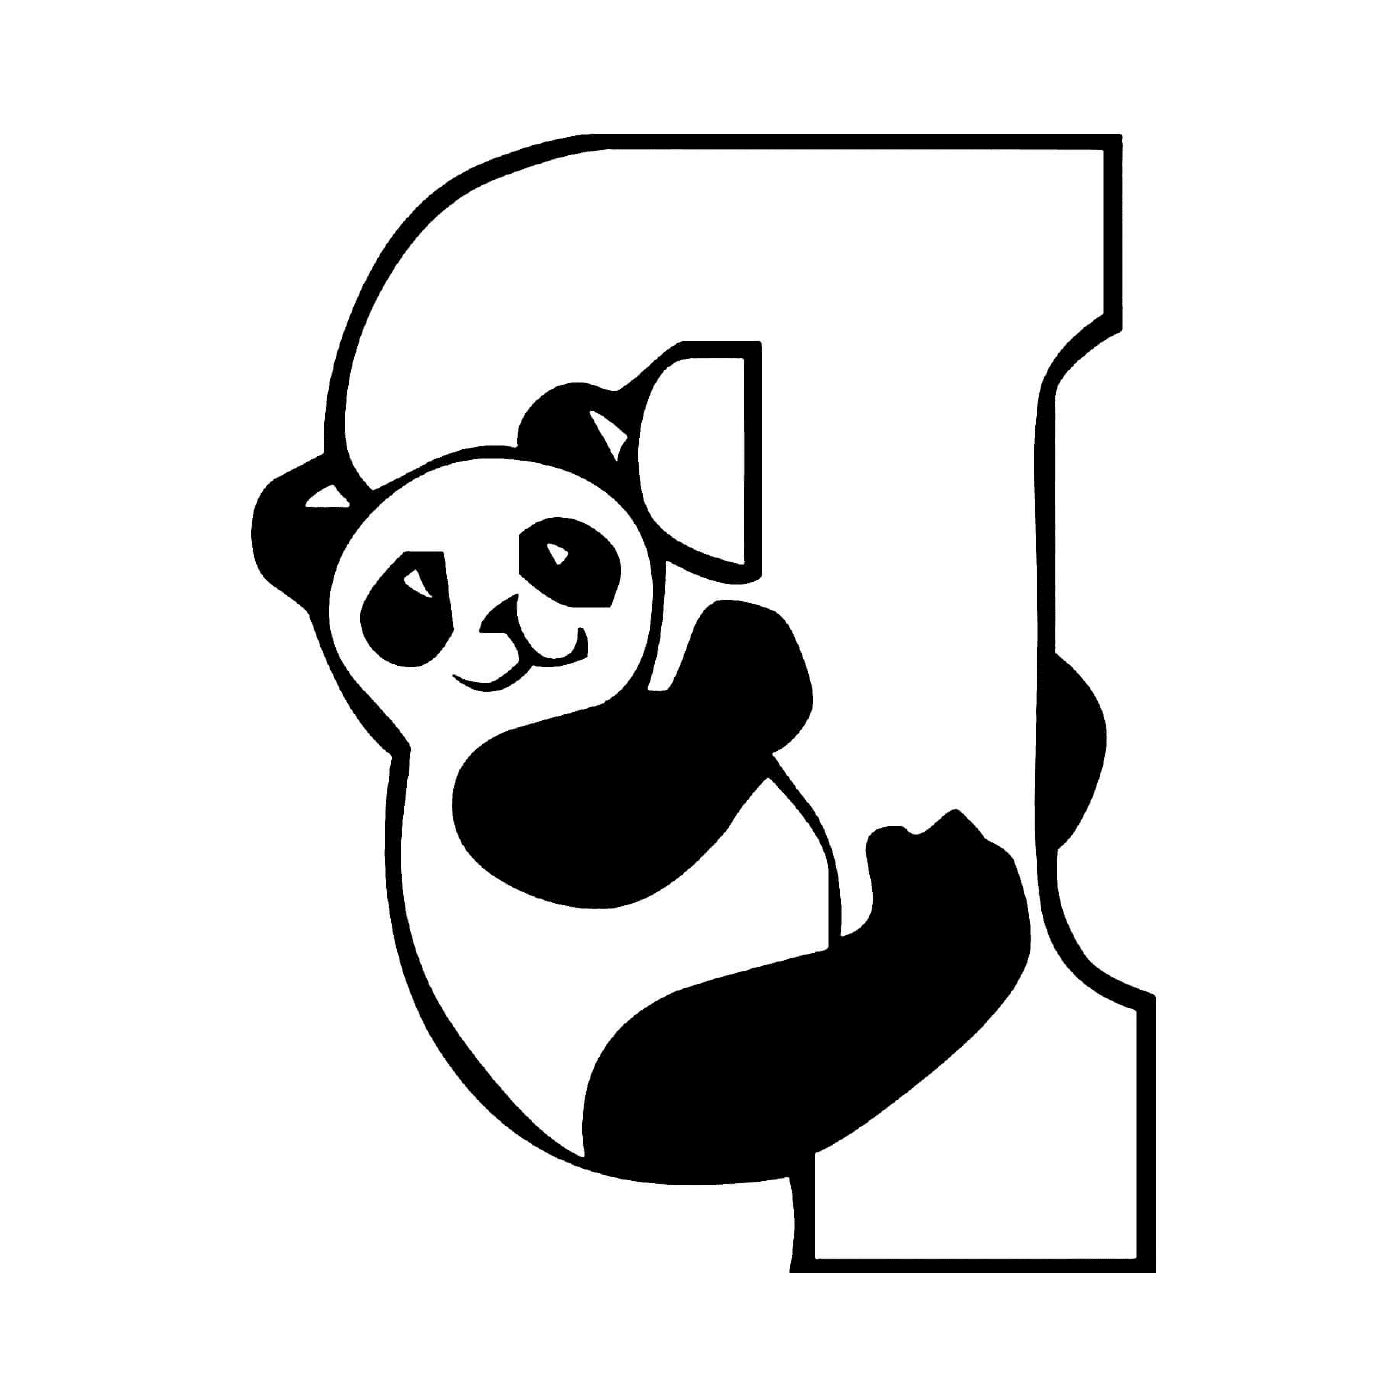  Letter P for panda, children's alphabet 